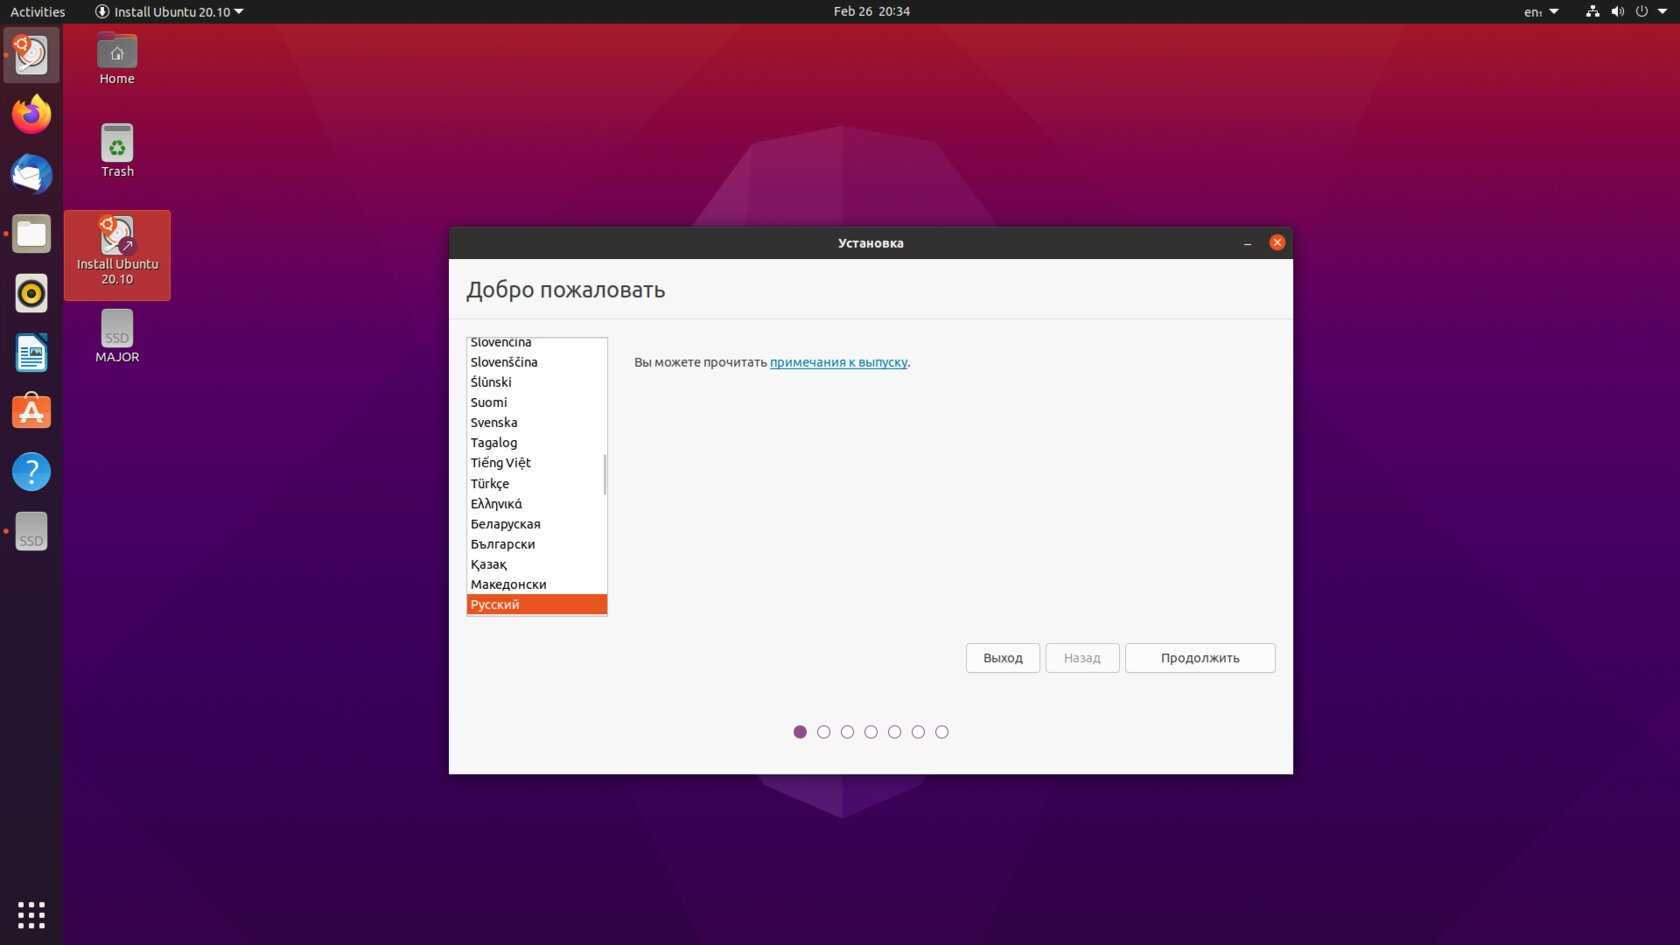 Как установить linux, apache, mysql, php (lamp) в ubuntu 14.04  | digitalocean